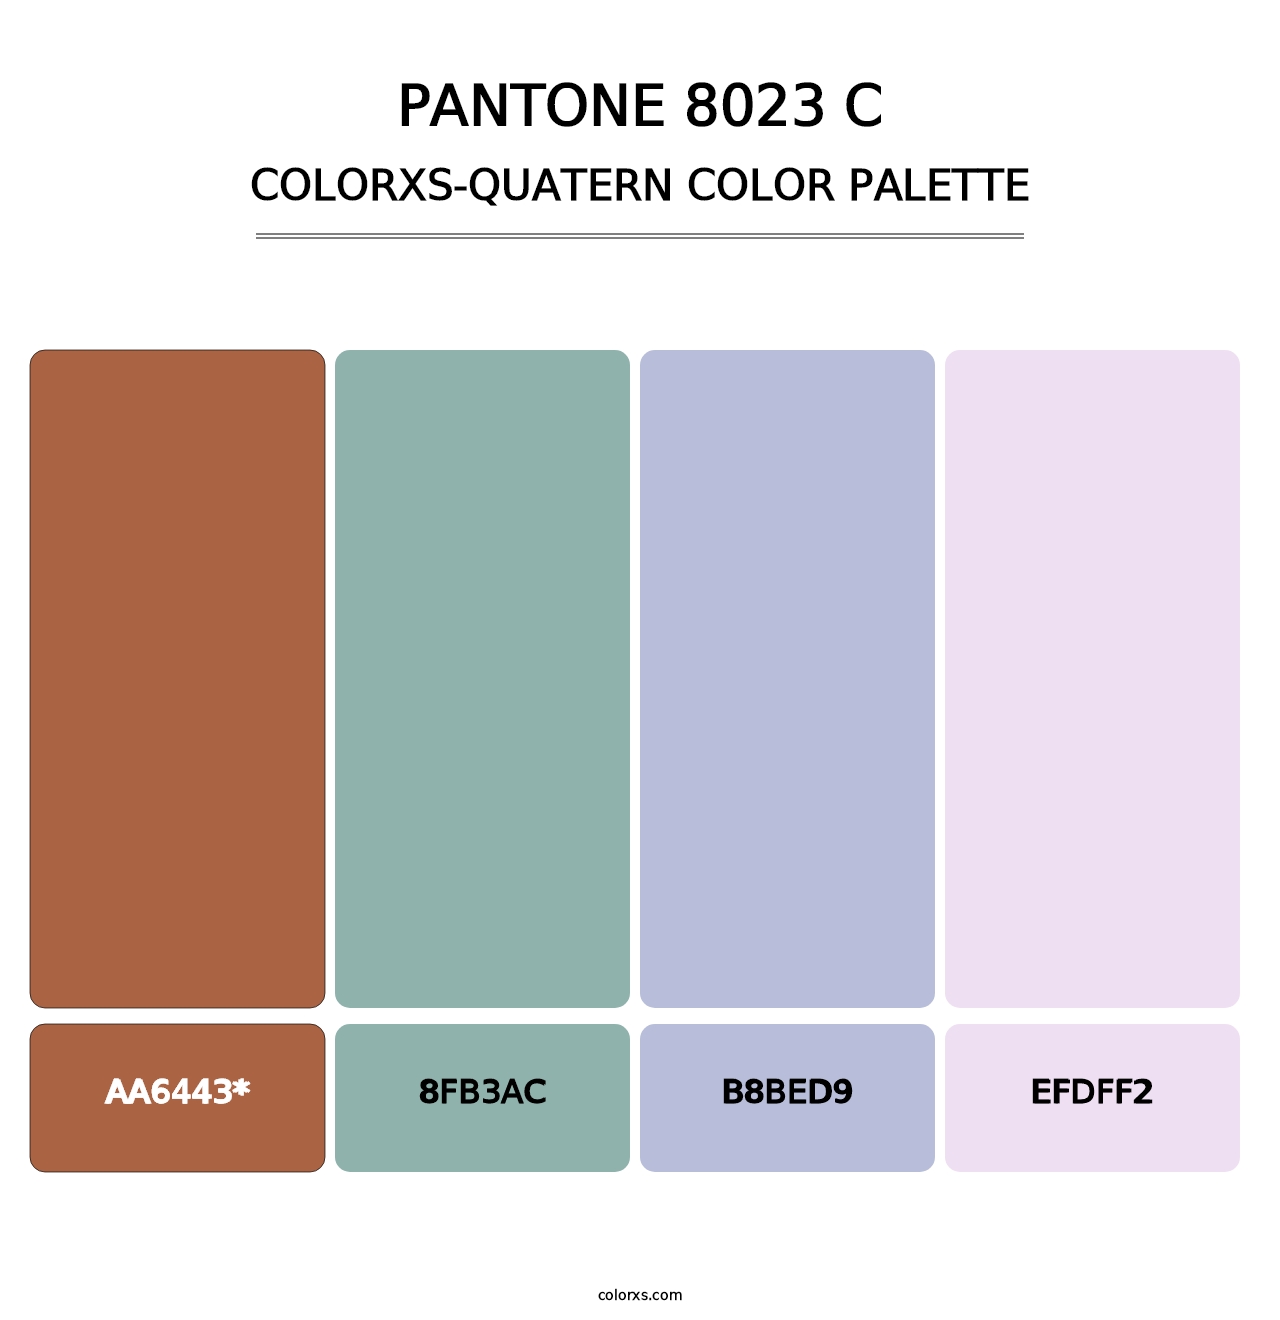 PANTONE 8023 C - Colorxs Quatern Palette